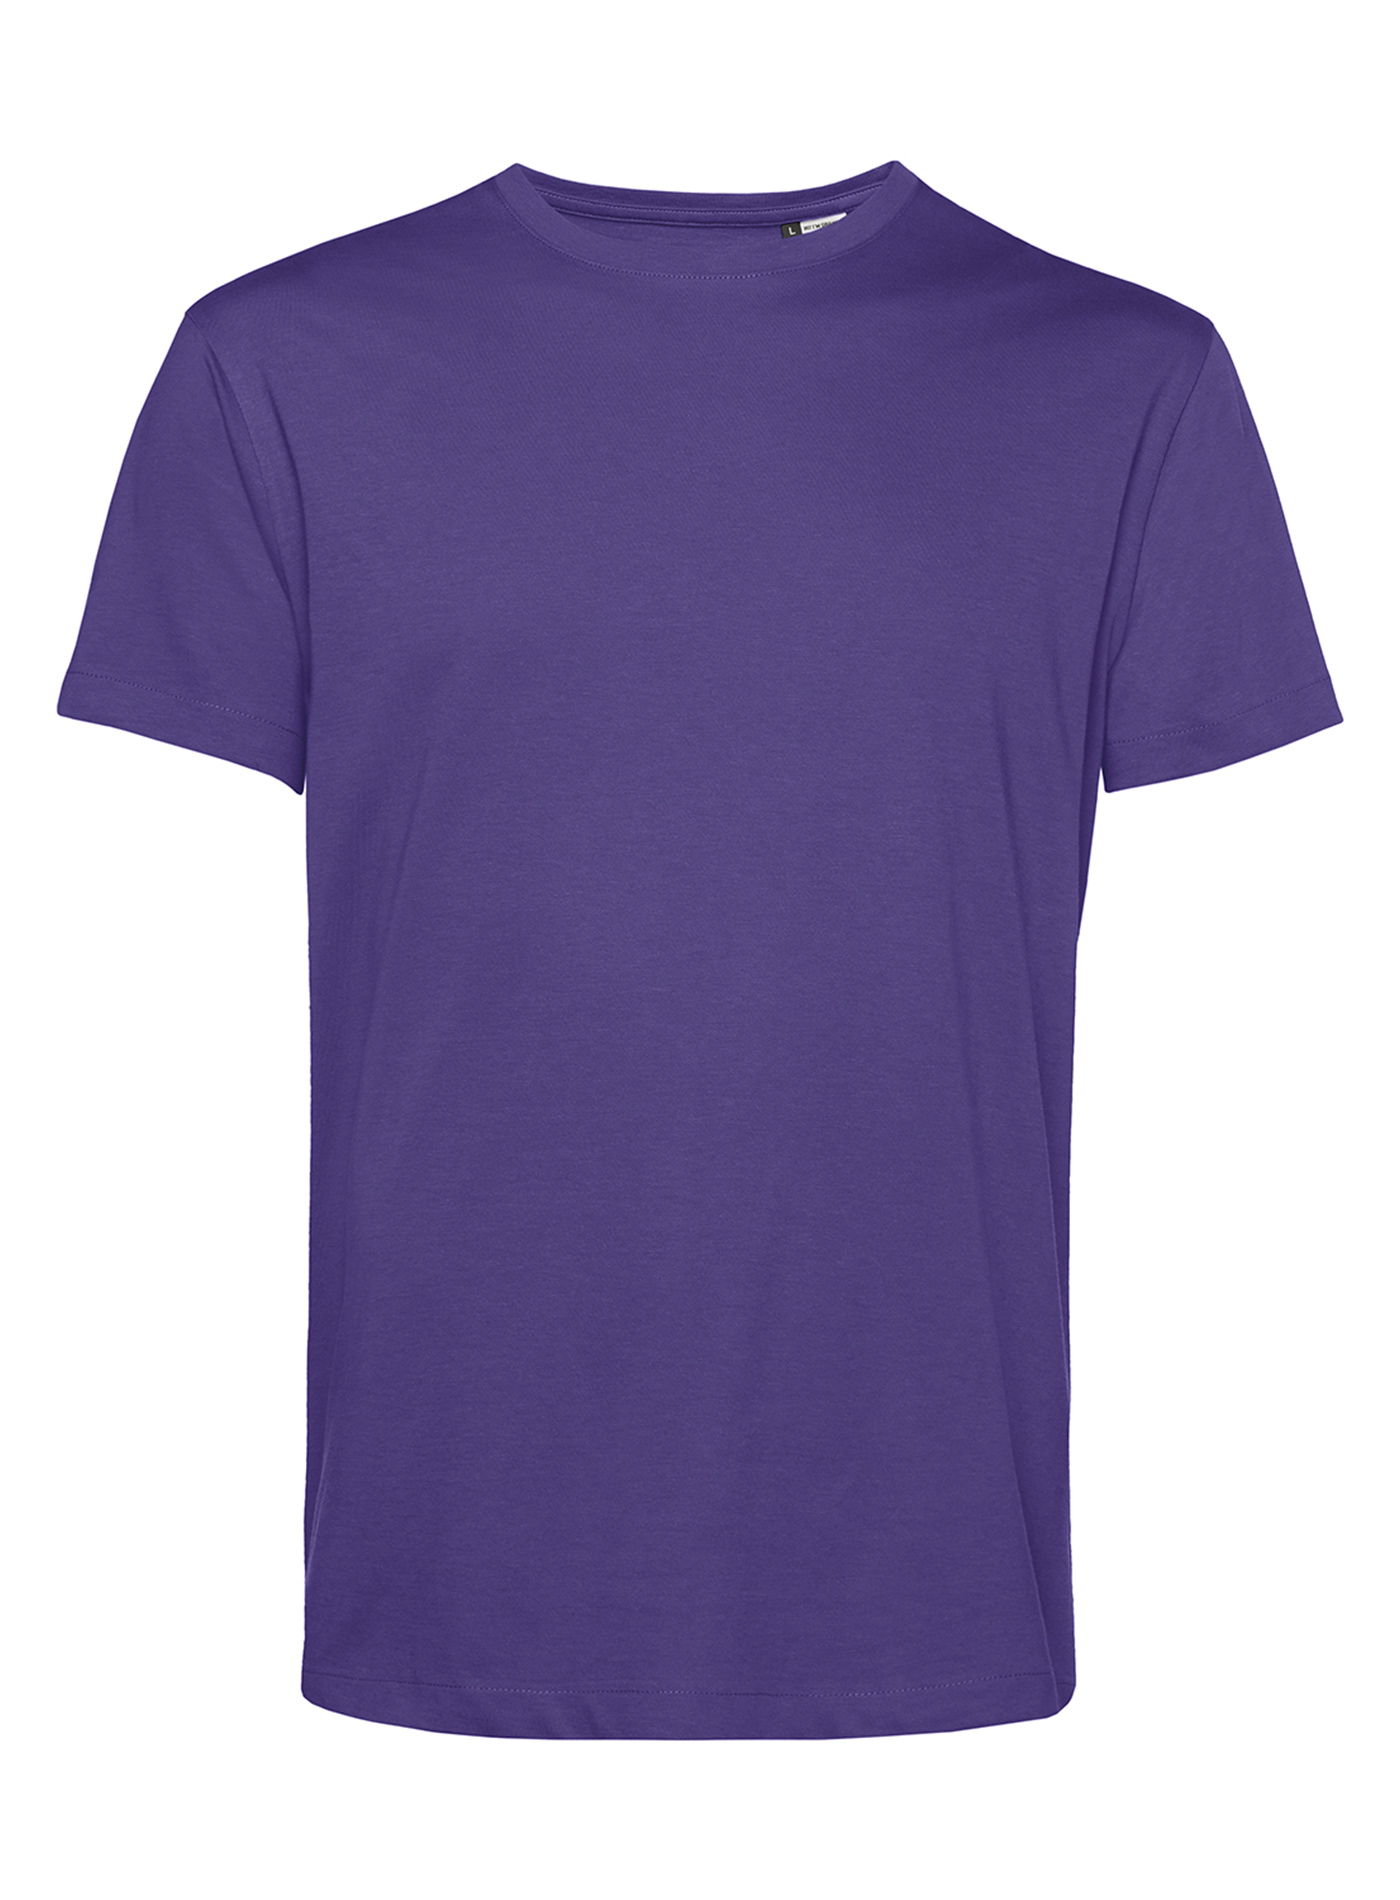 Pánské tričko B&C Collection Organic - Tmavě fialová L